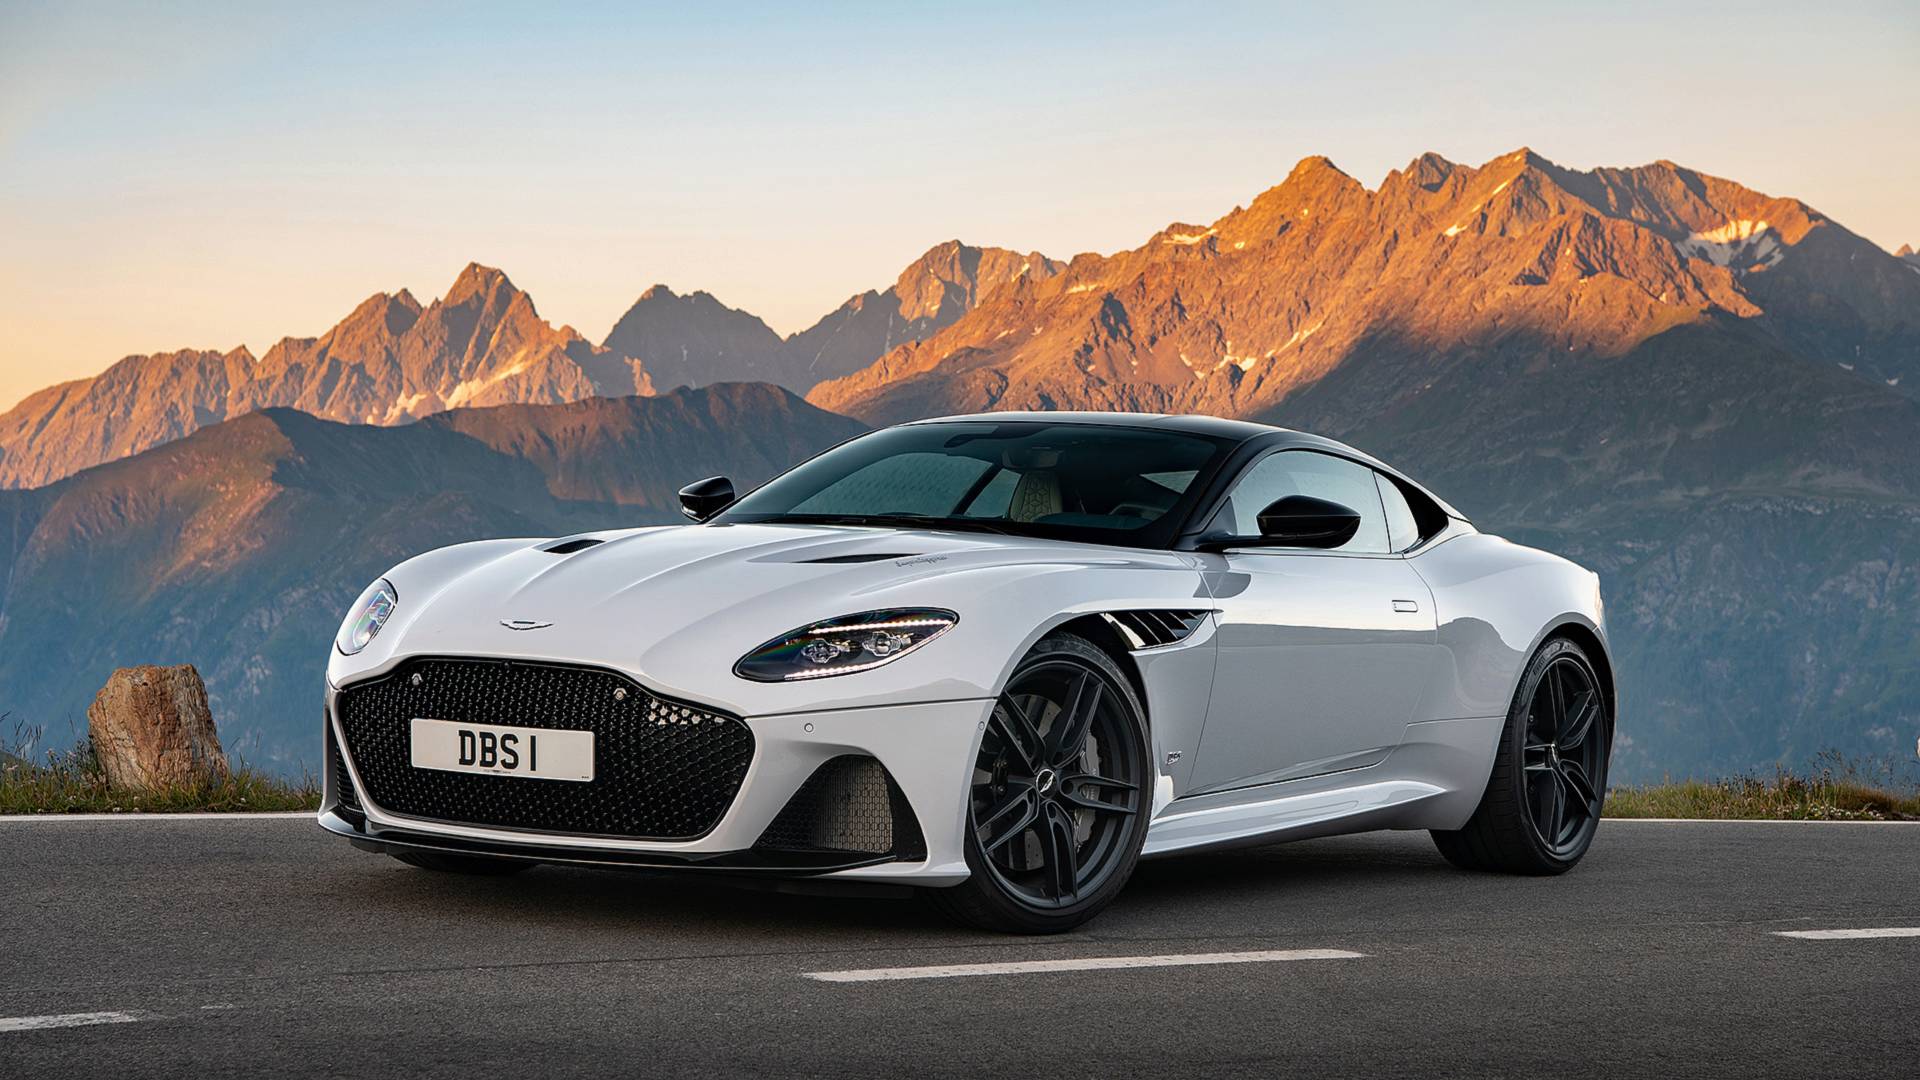 Aston Martin DBS Superleggera First Drive What’s In A Name?